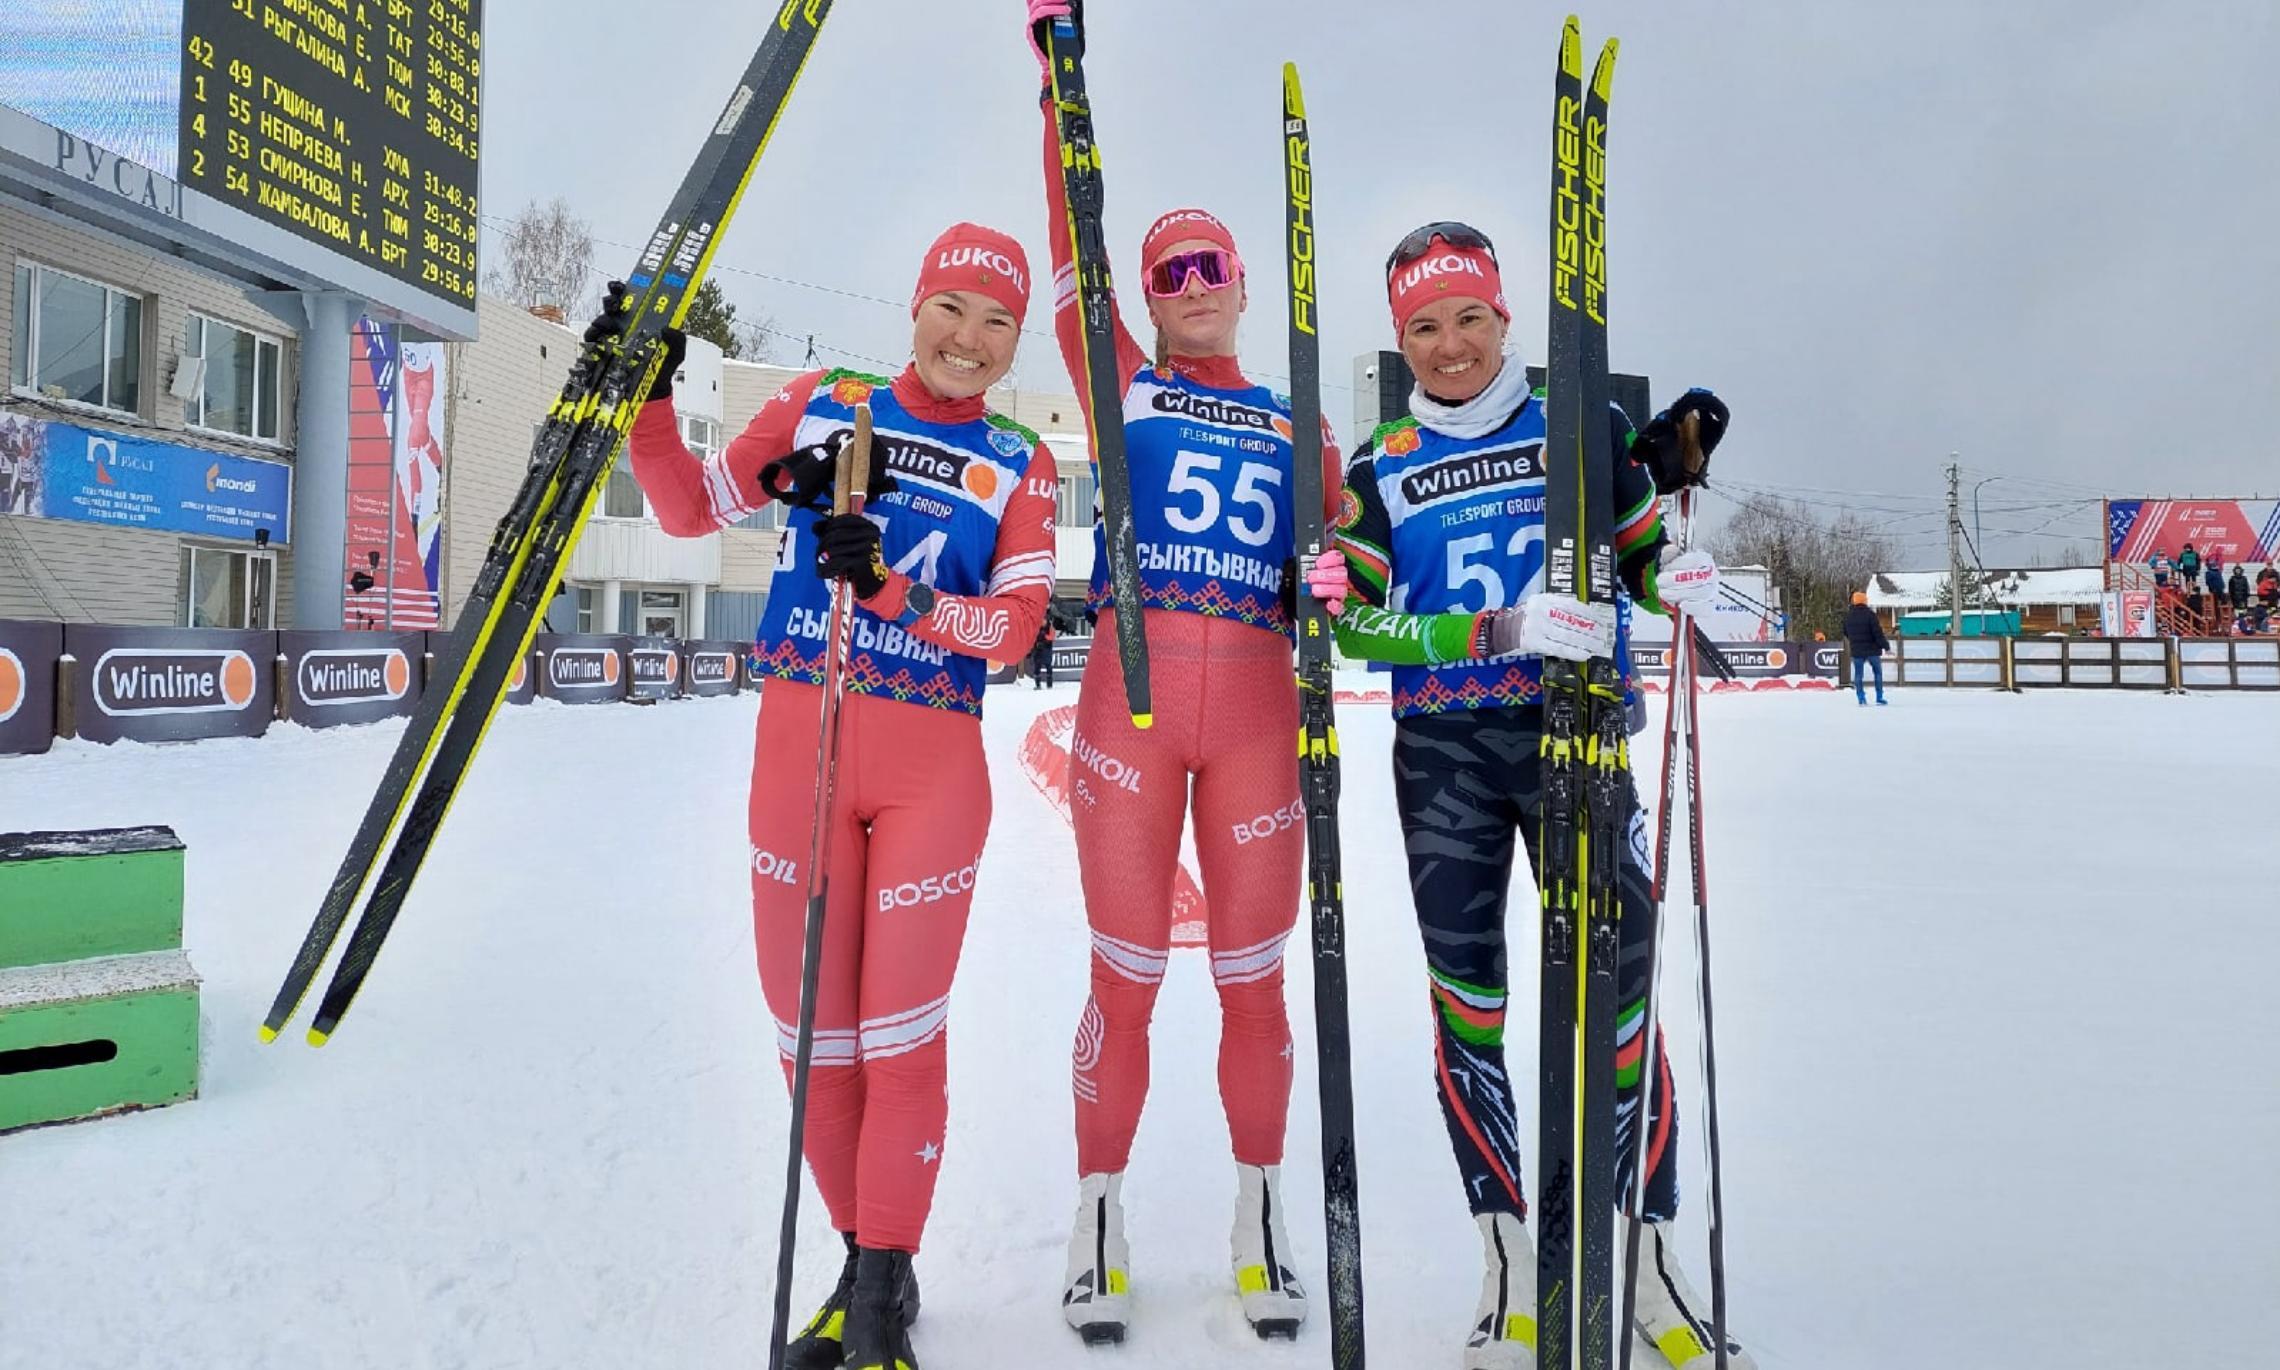 Лыжные гонки чемпионат россии 2023 результаты